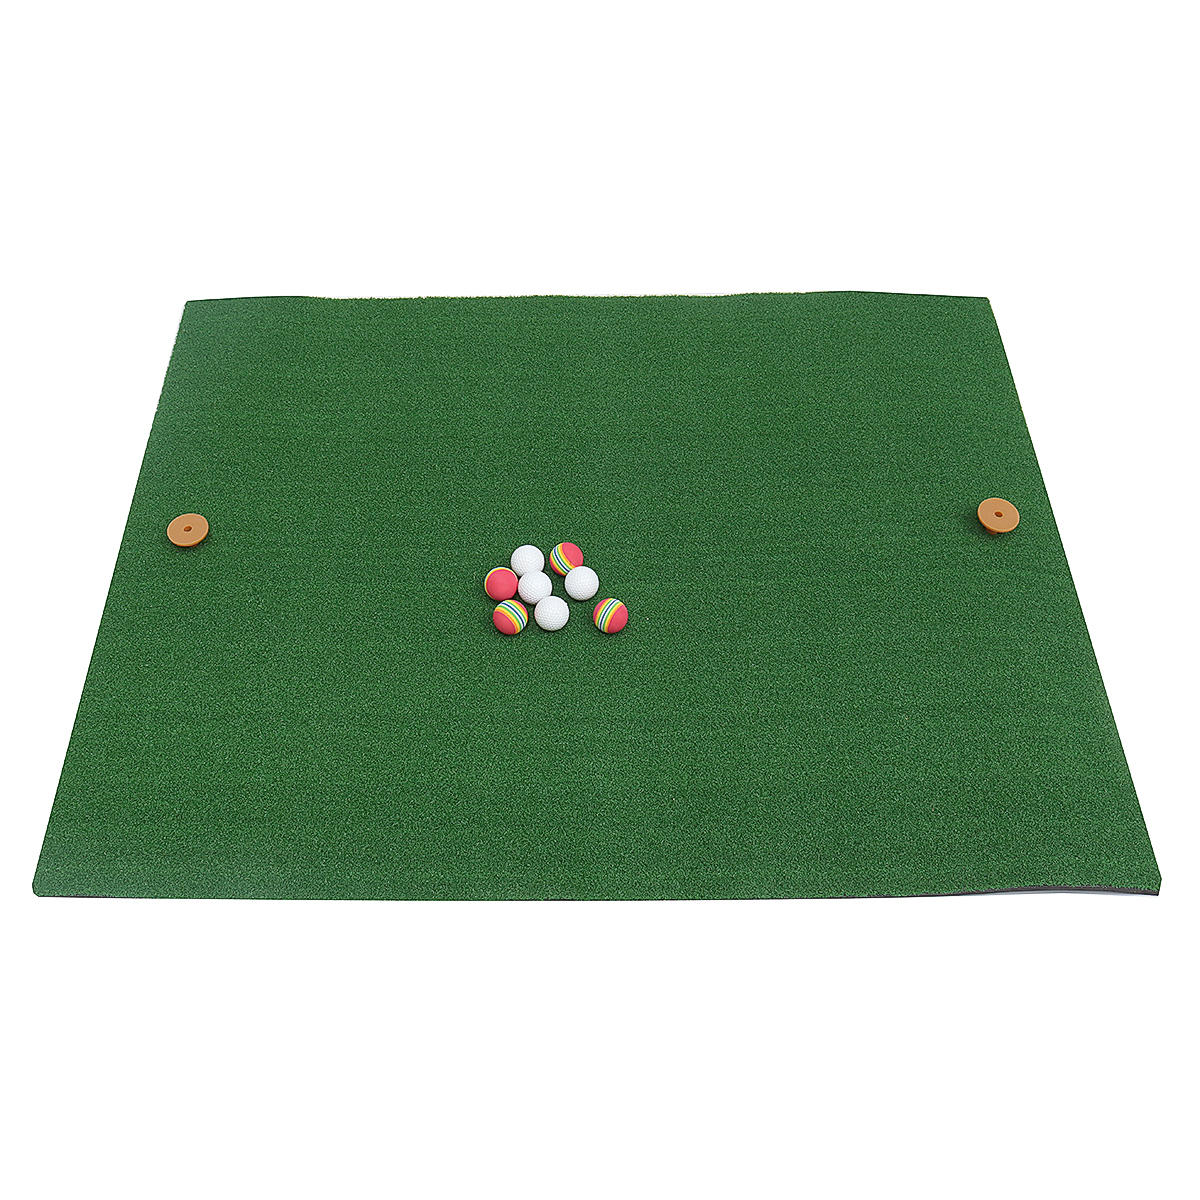 Indoor Golf Practice Grass Mat Residenti?le training Turfmat raken met bal en tee